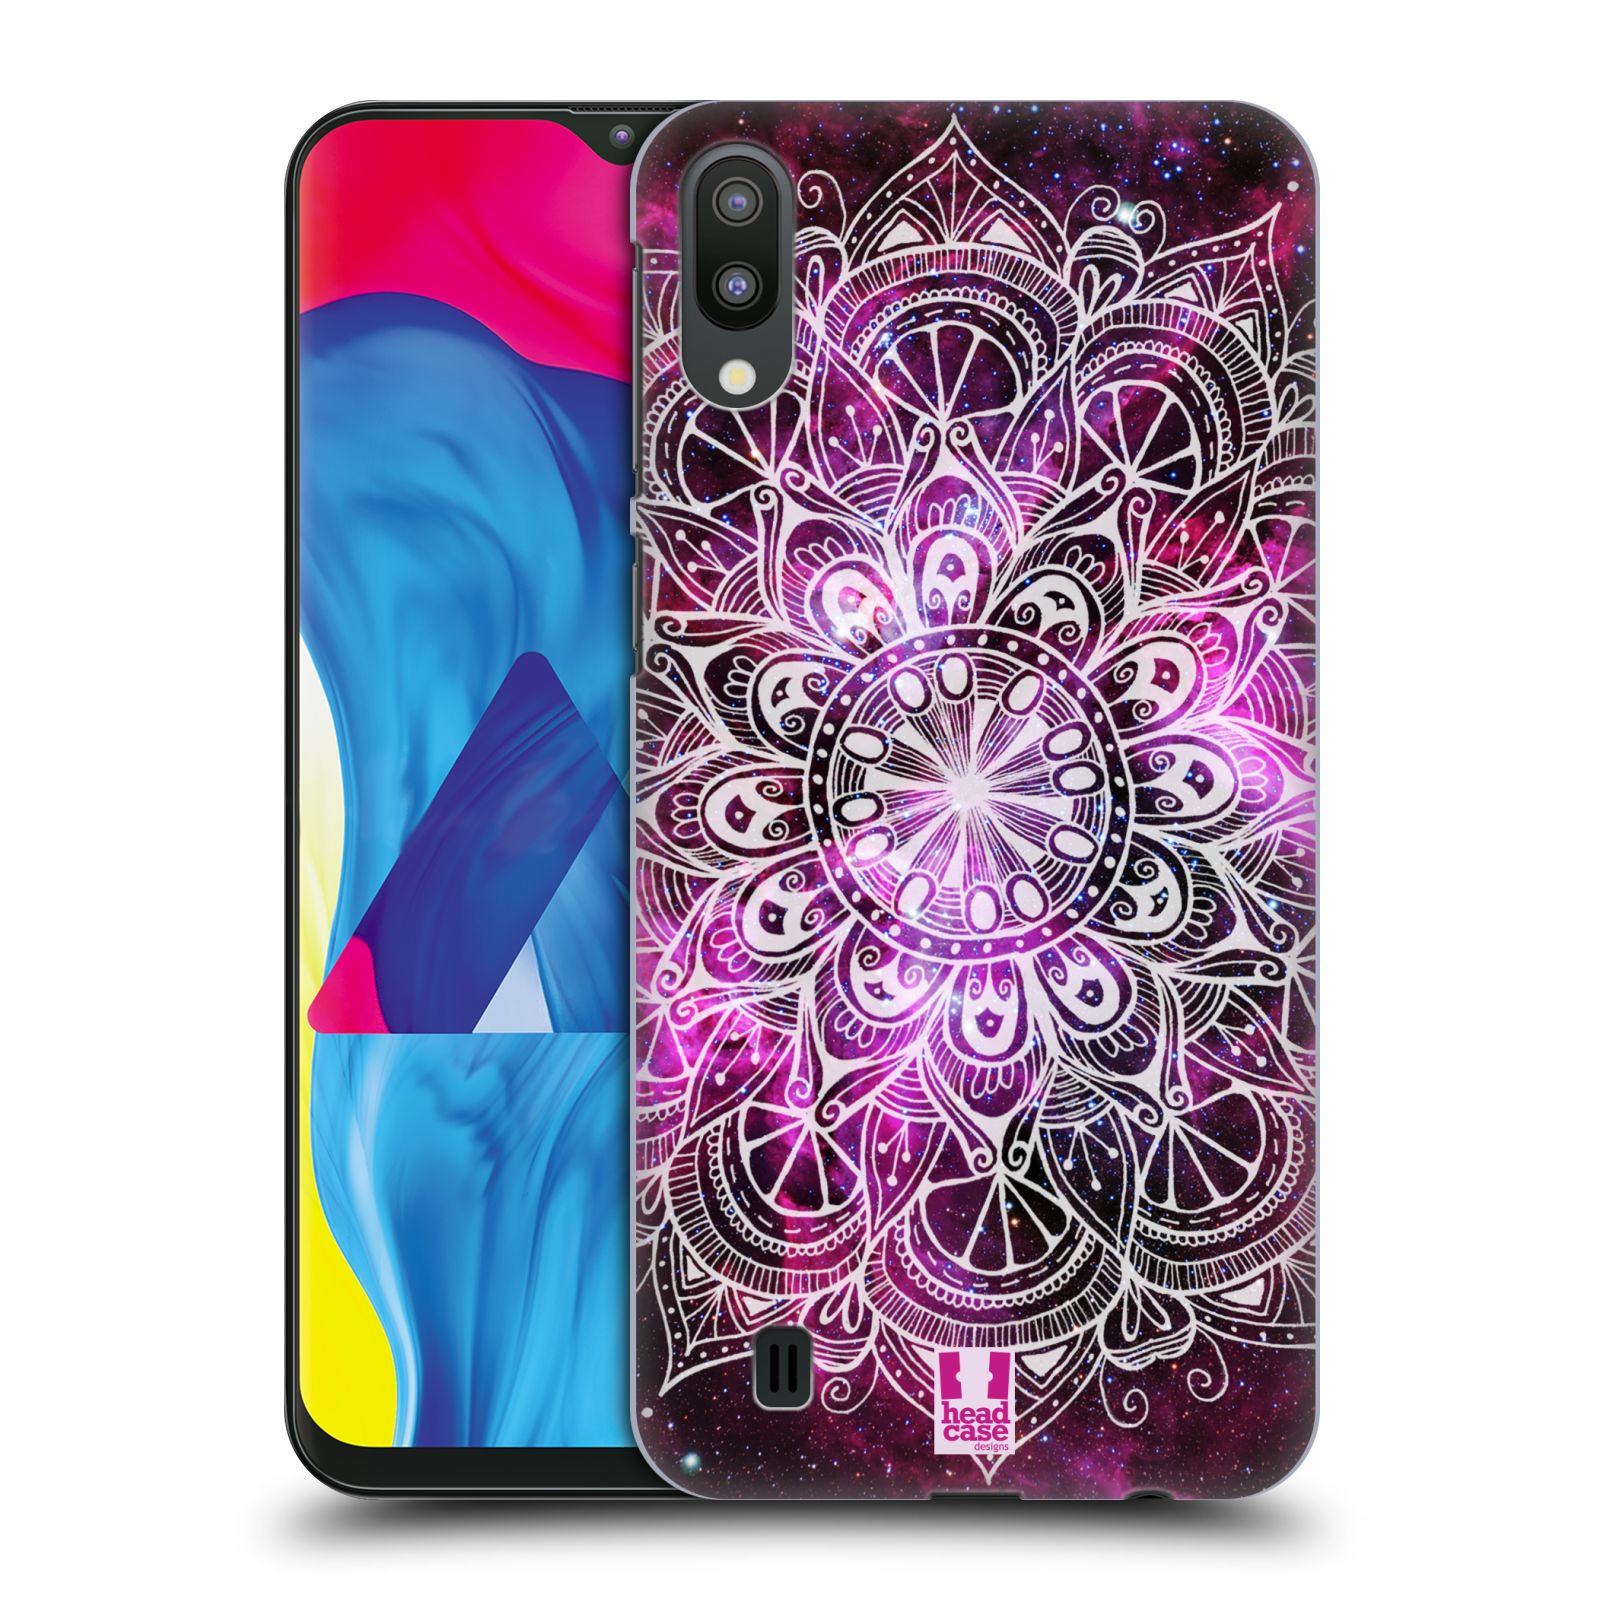 Plastový obal HEAD CASE na mobil Samsung Galaxy M10 vzor Indie Mandala slunce barevná FIALOVÁ MLHOVINA